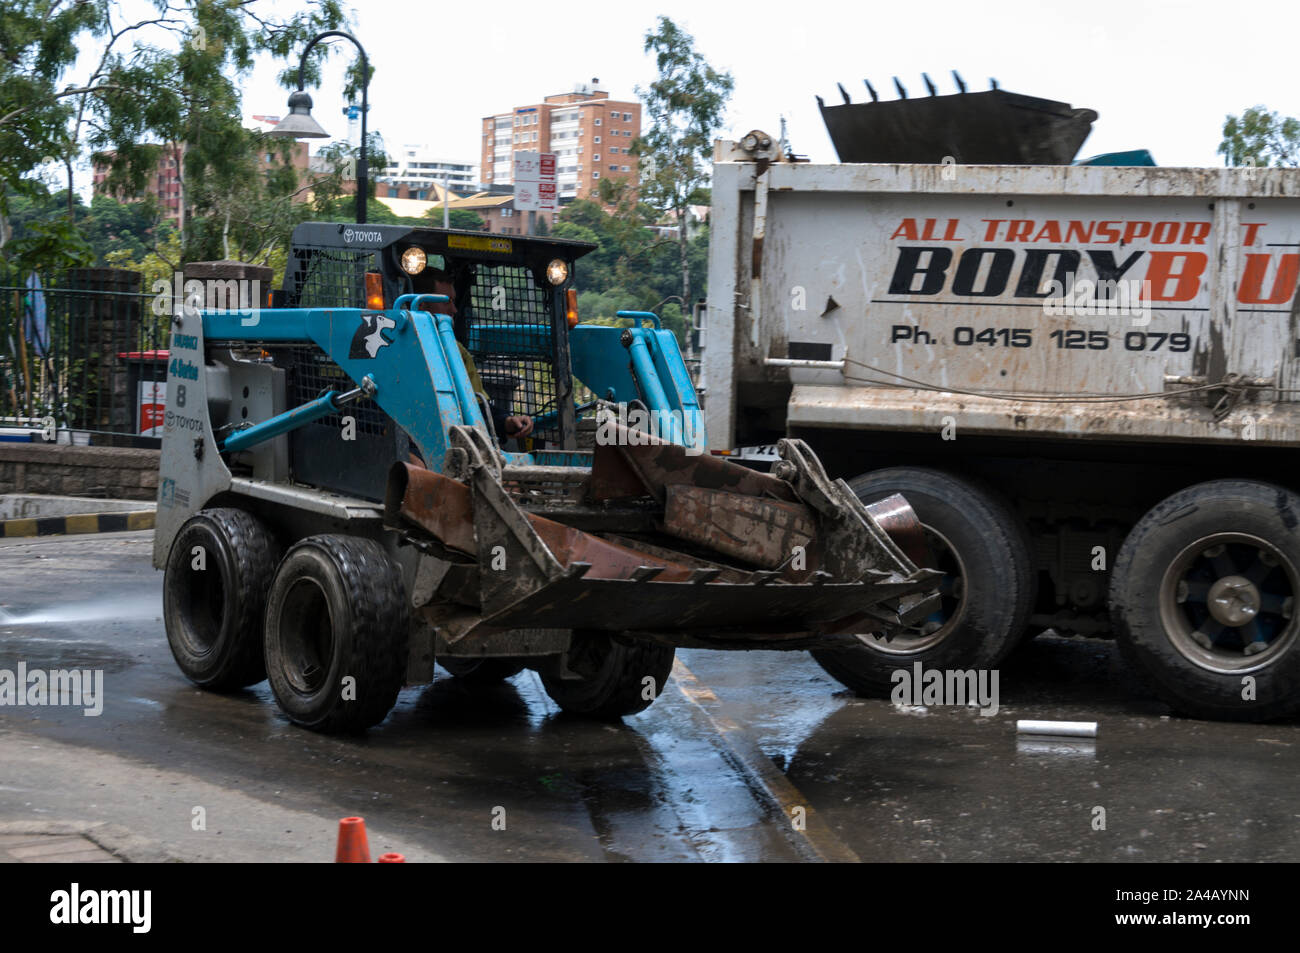 Le nettoyage après les récentes inondations à Brisbane, Queensland, Australie. Un chariot élévateur transportant un équipement endommagé par les inondations vers un chariot d'élimination en attente Banque D'Images